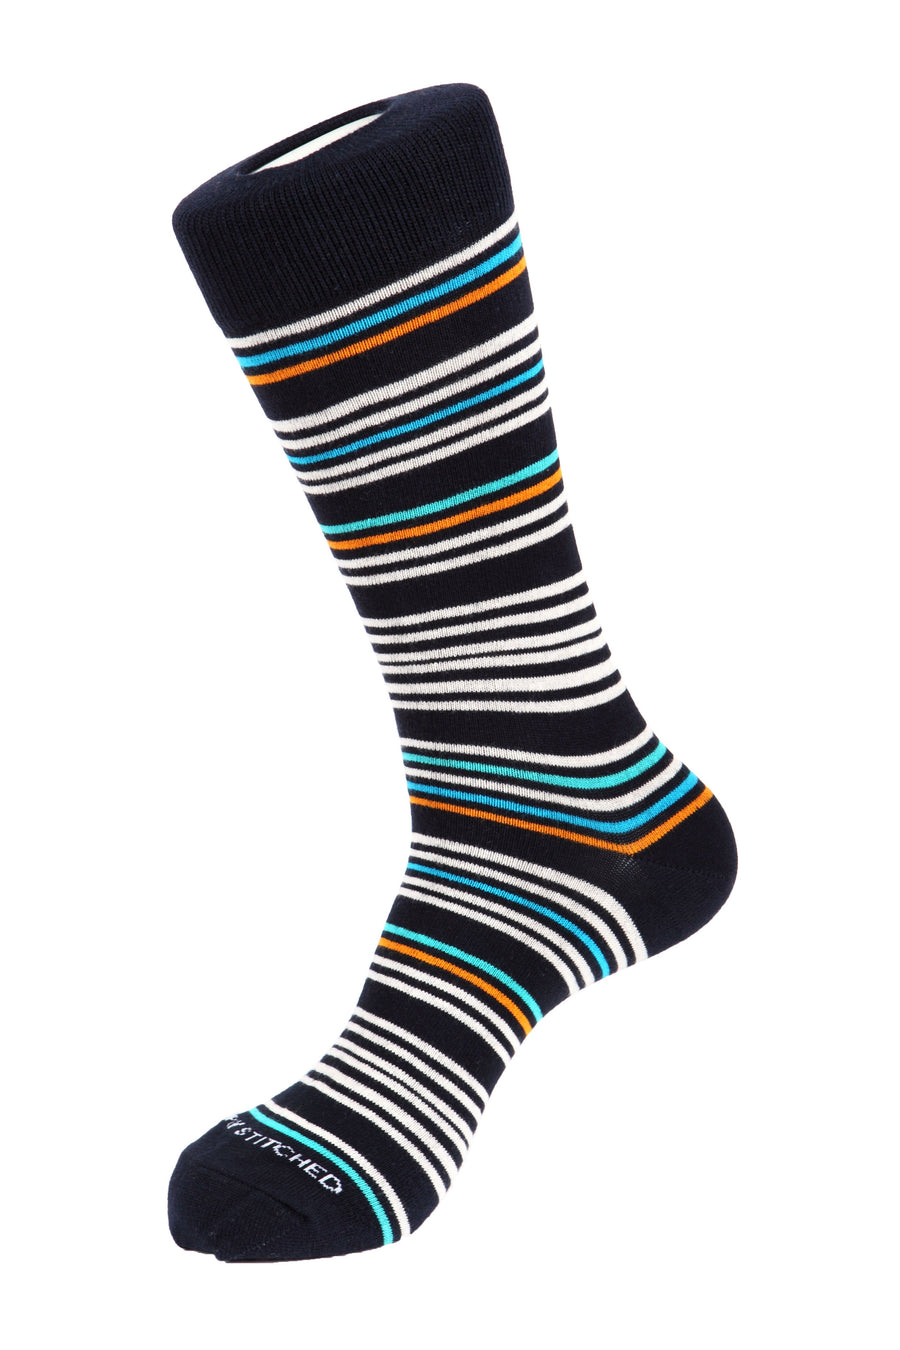 Sweetness Stripe Sock